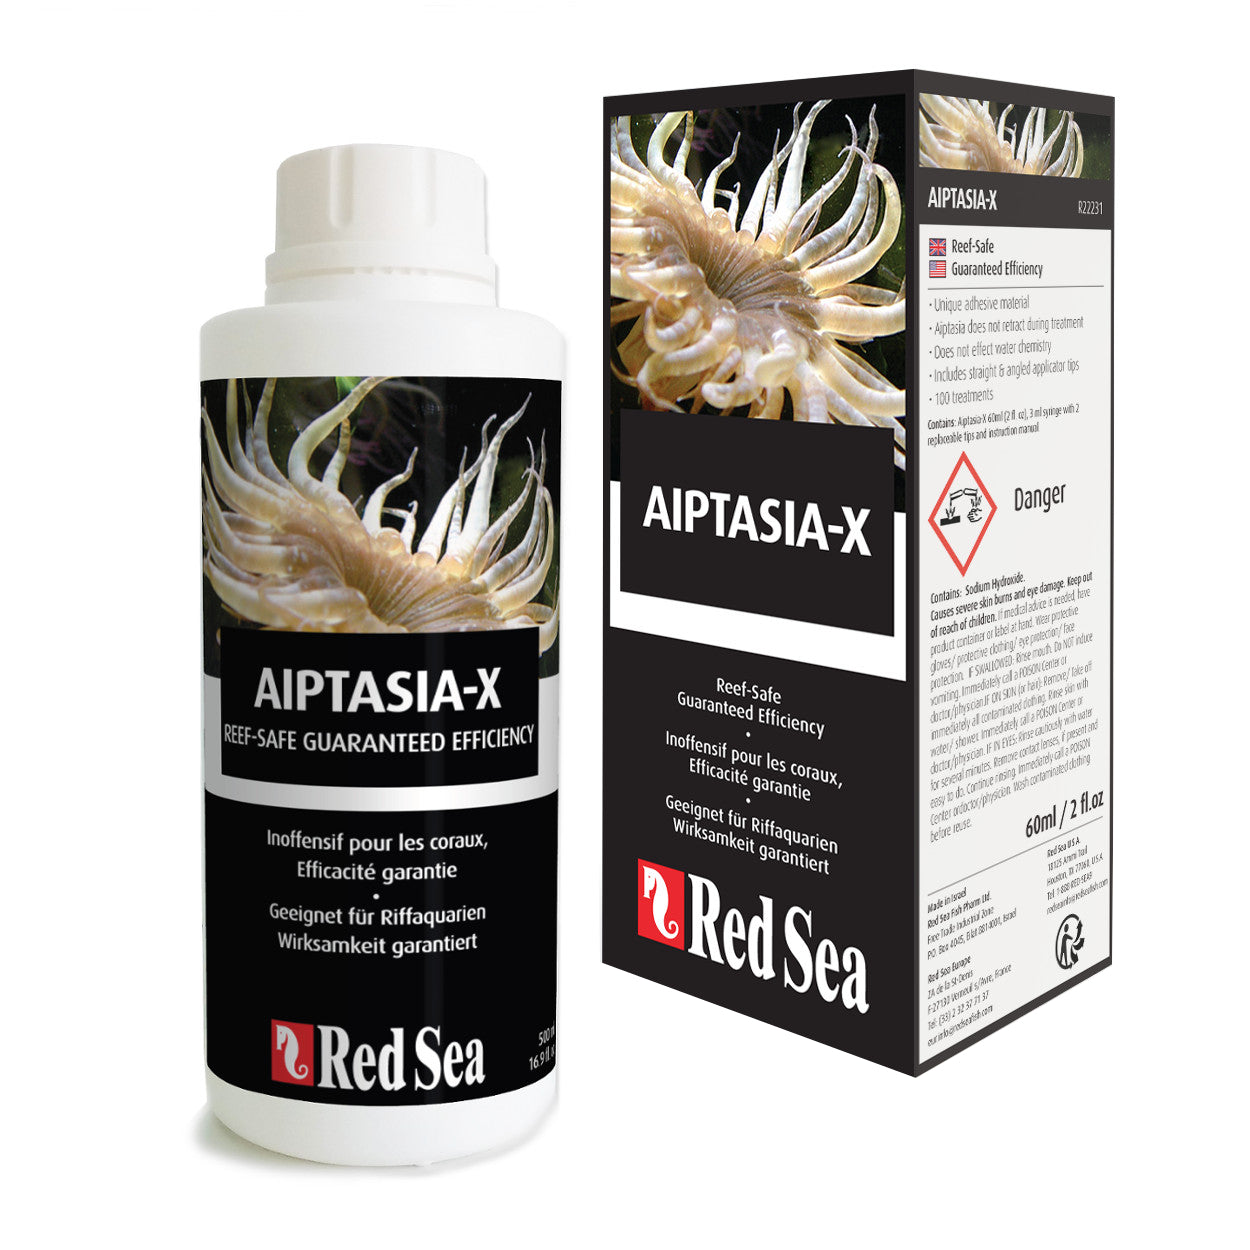 Red Sea Aiptasia-X Coral Reef Safe Elimination of Aiptasia 60ml